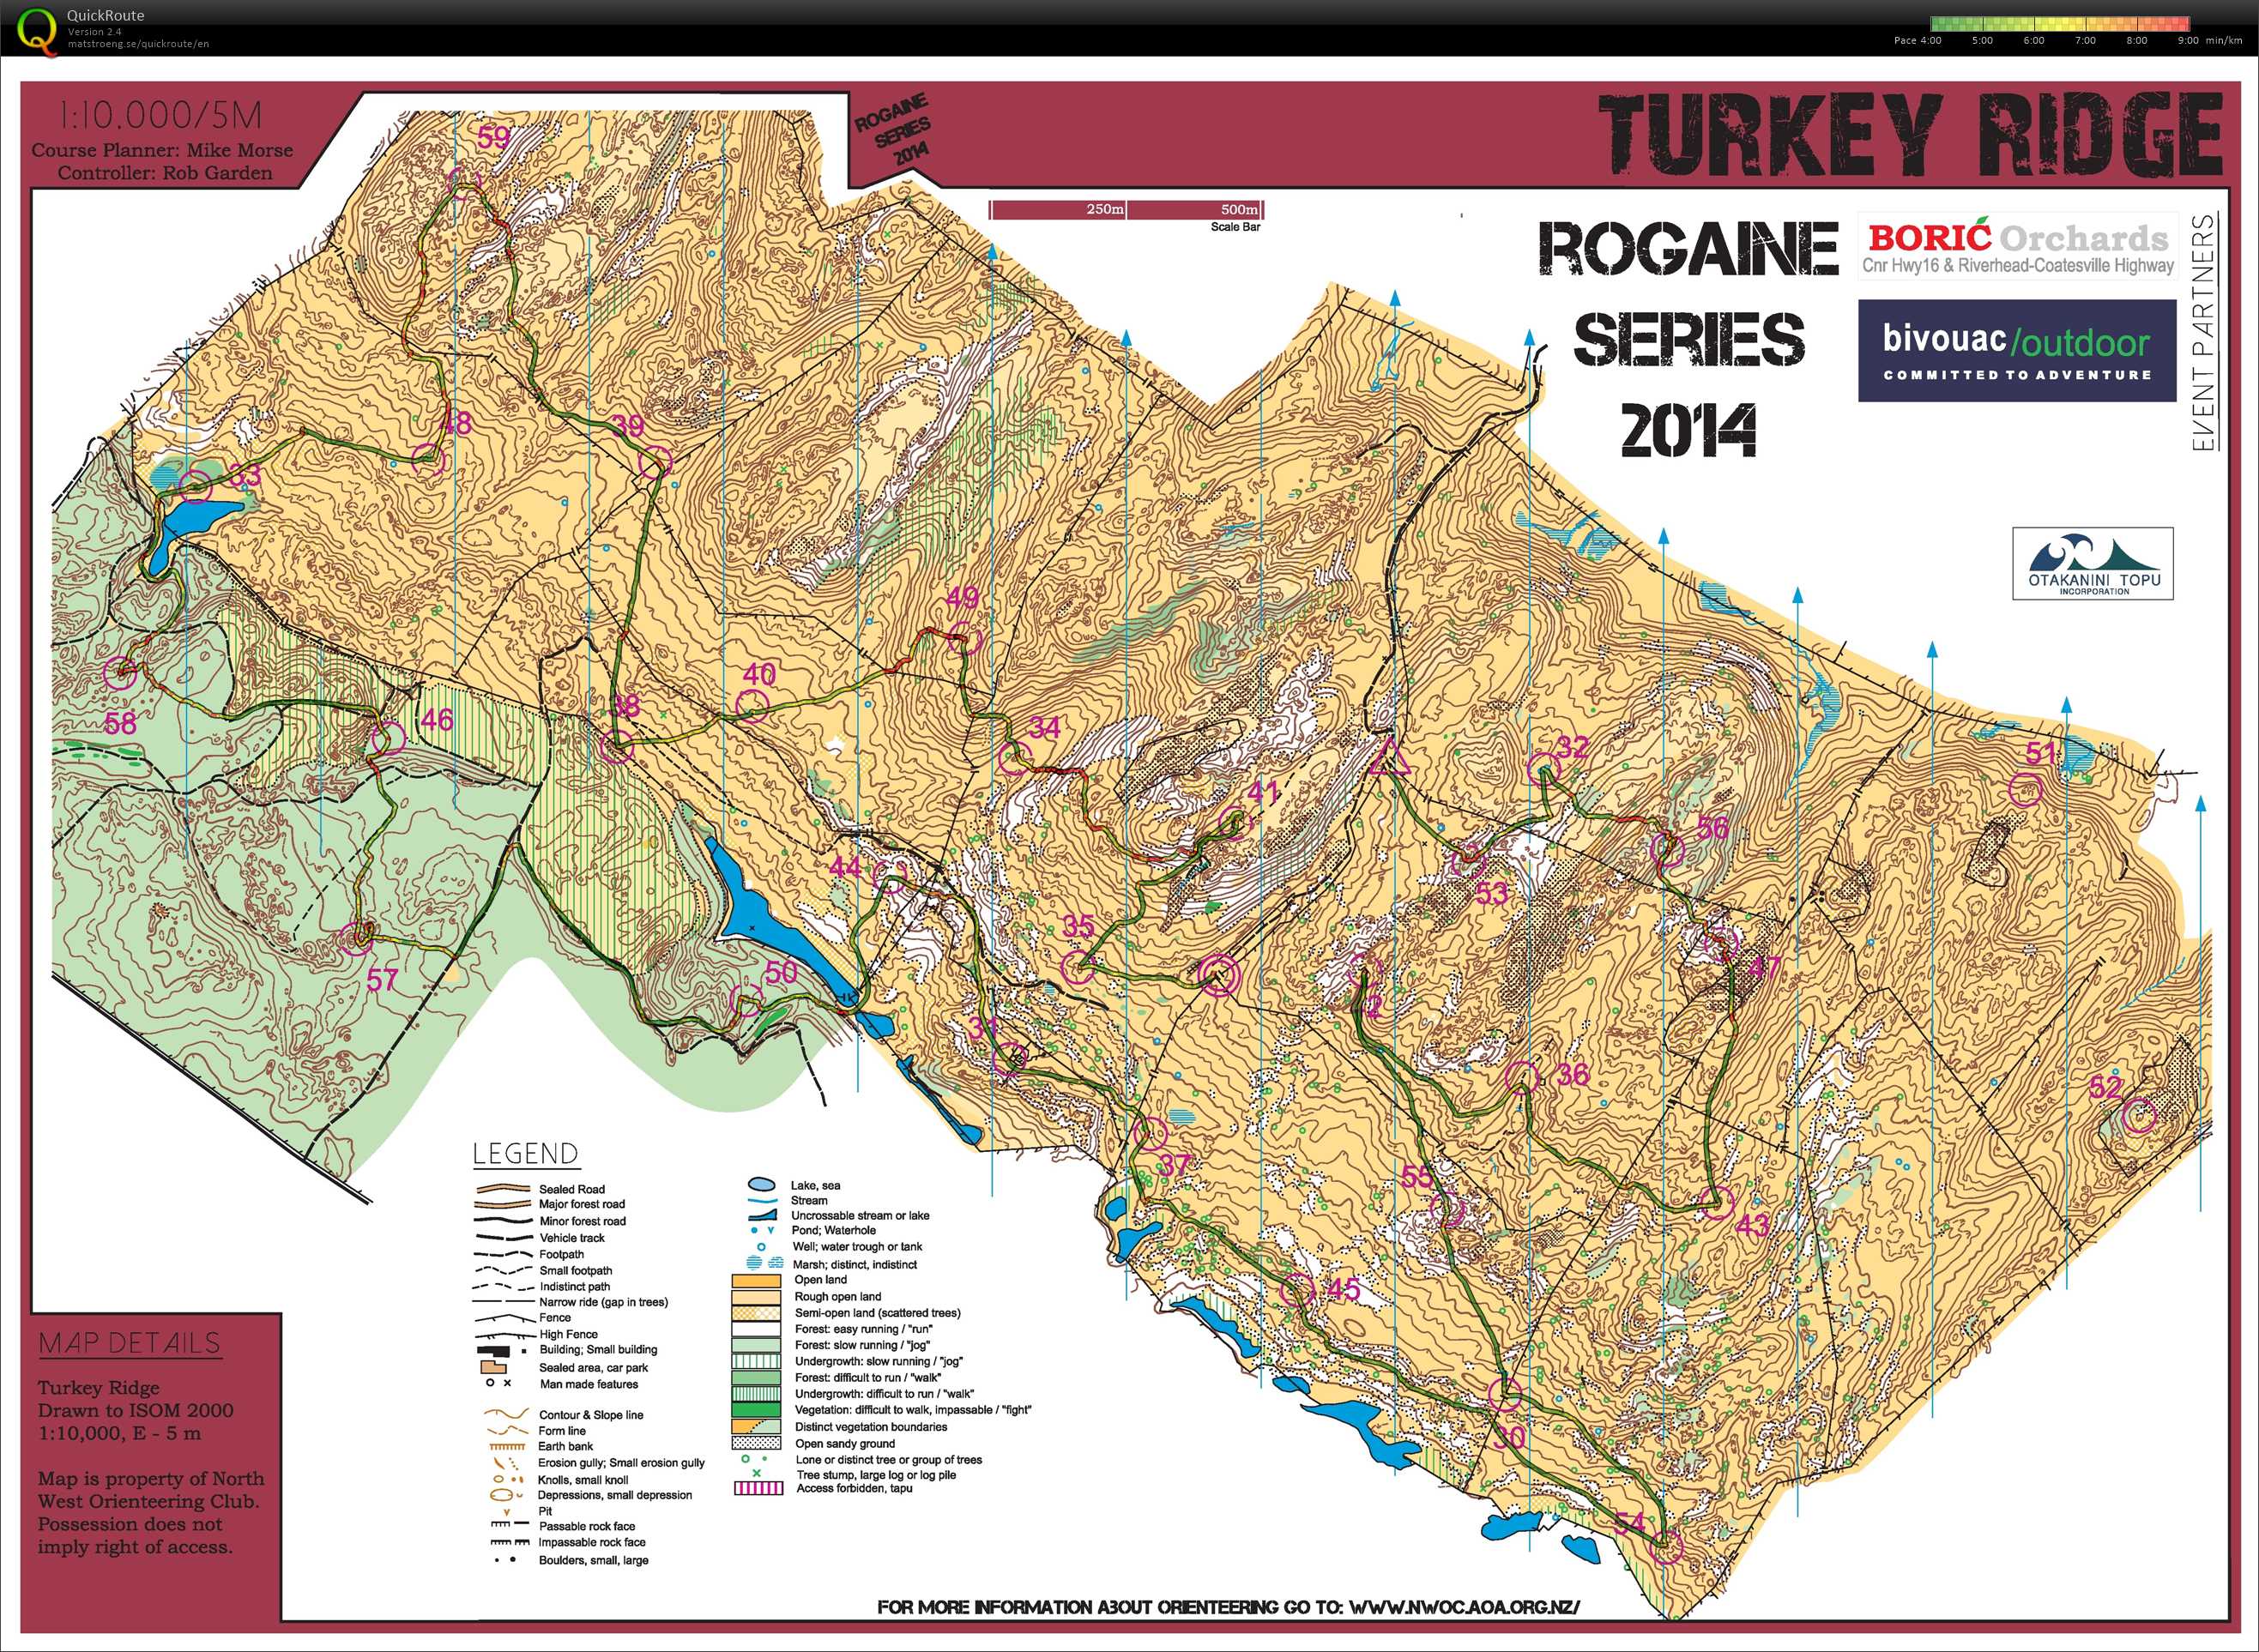 Rogaine Series Part 2 - Turkey Ridge (10-05-2014)